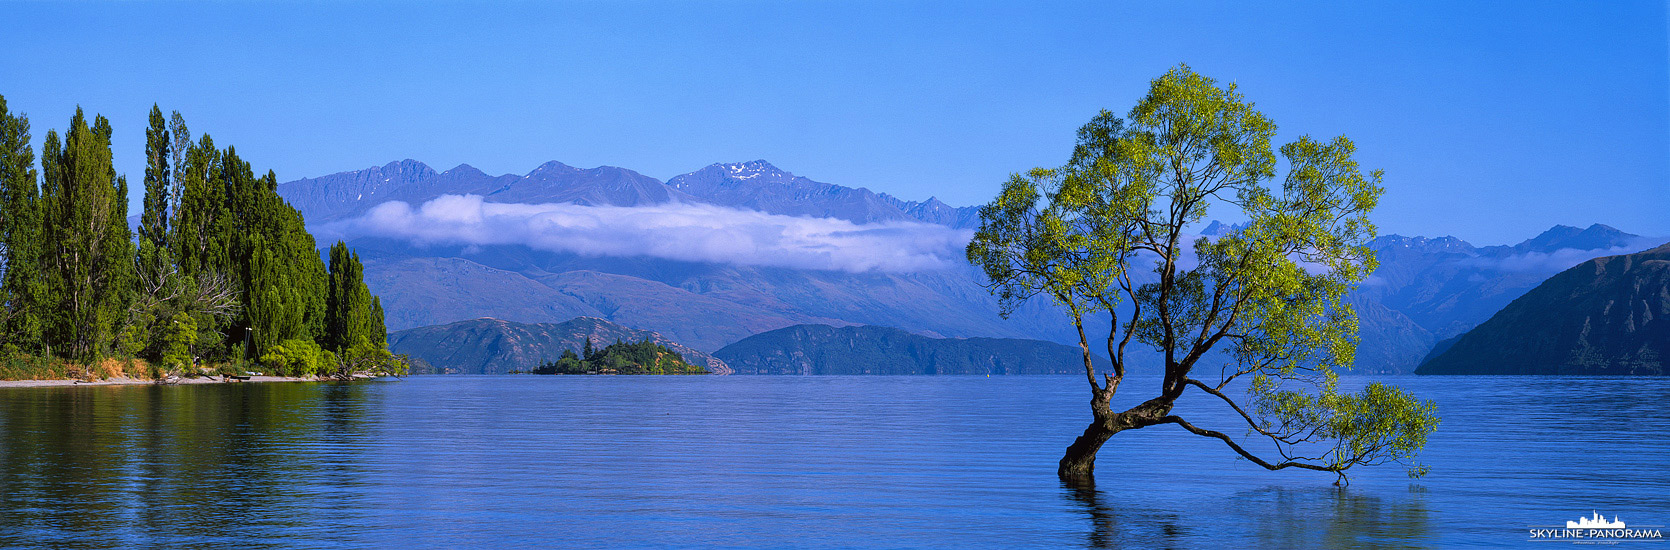 New Zealand - Wanaka Lone Tree in 6x17 (p_01145)